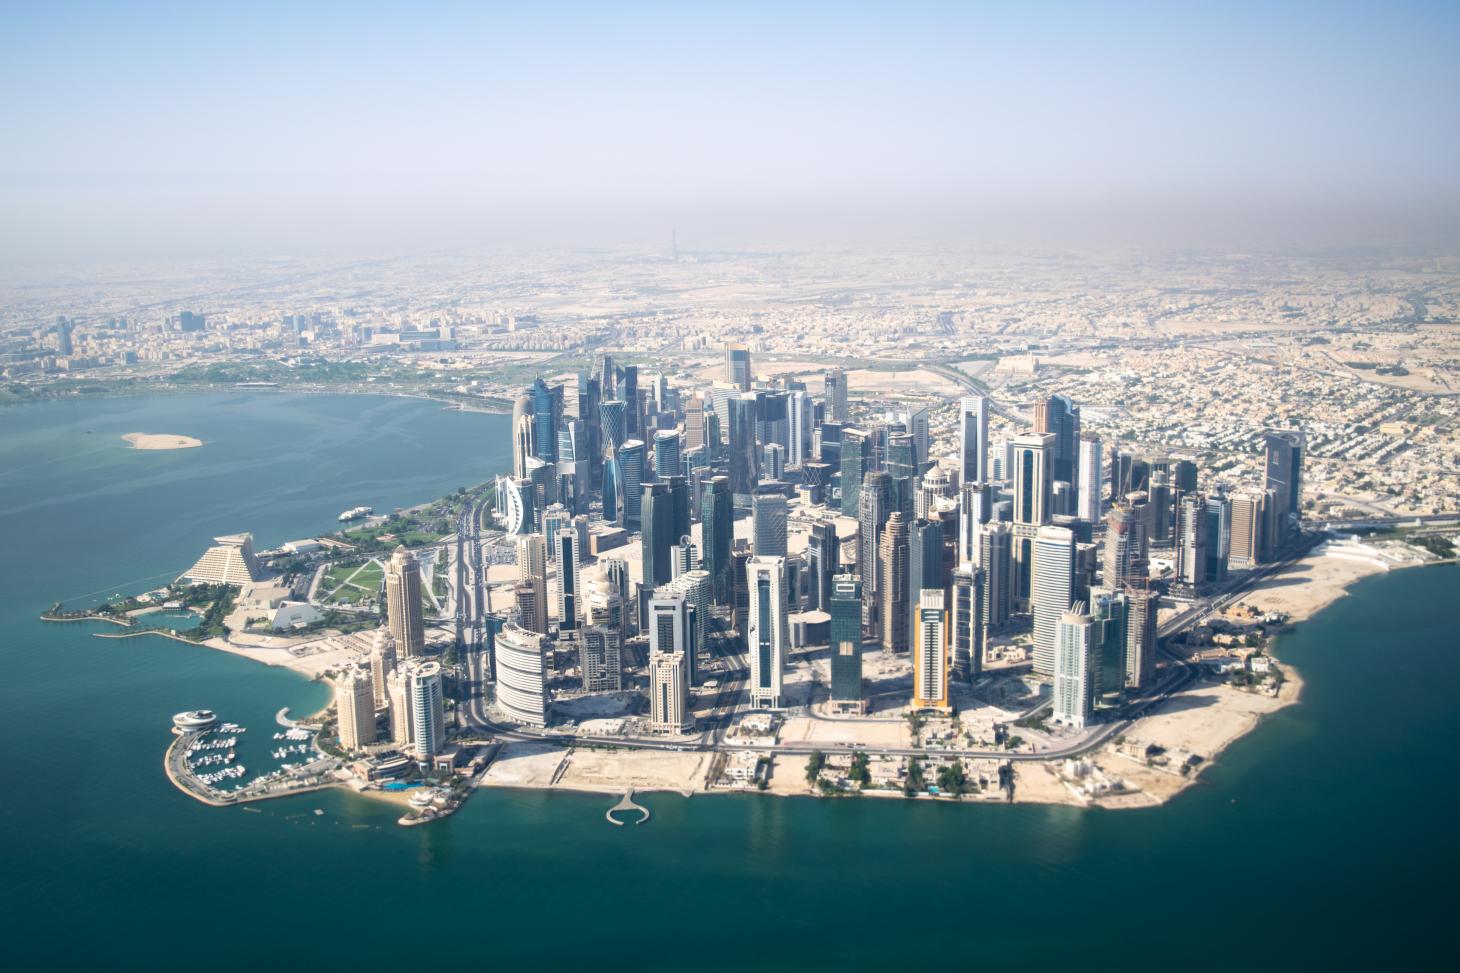 Doha City Landscape - Qatar Aerial - 1460x973 Wallpaper - teahub.io